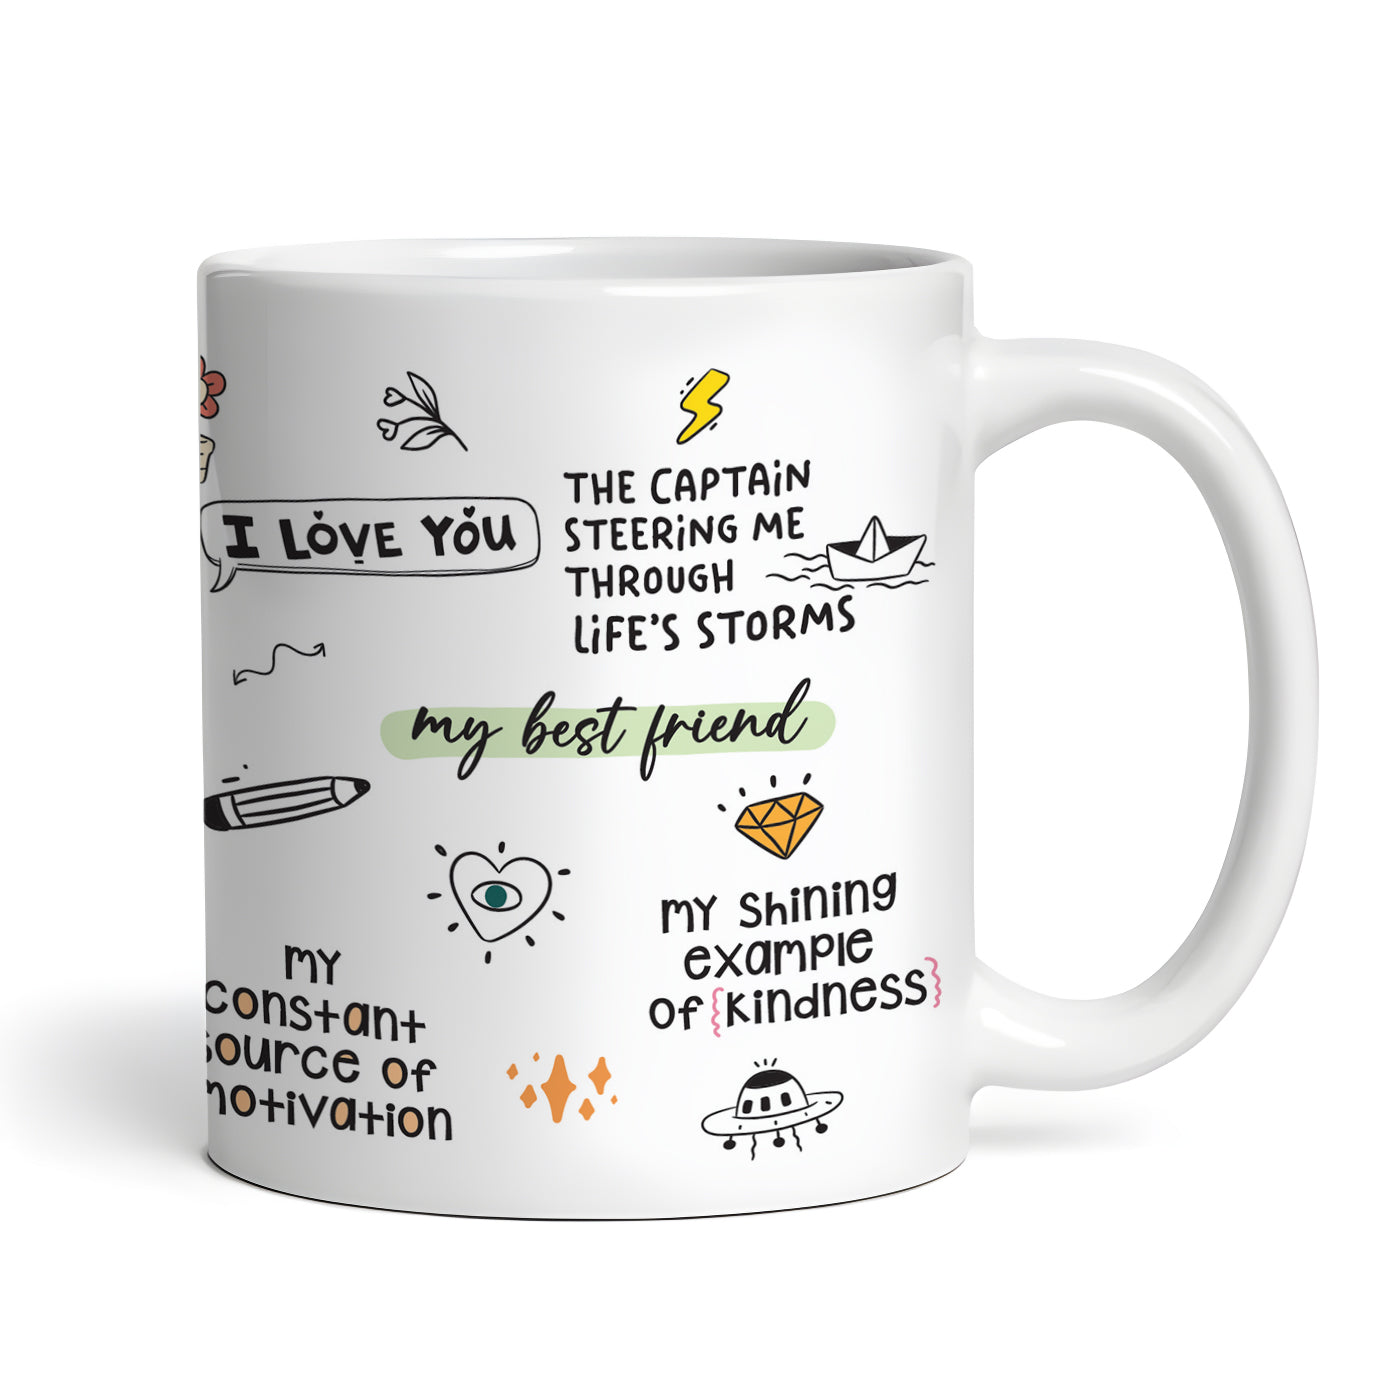 Appa Love Gratitude Coffee Mug